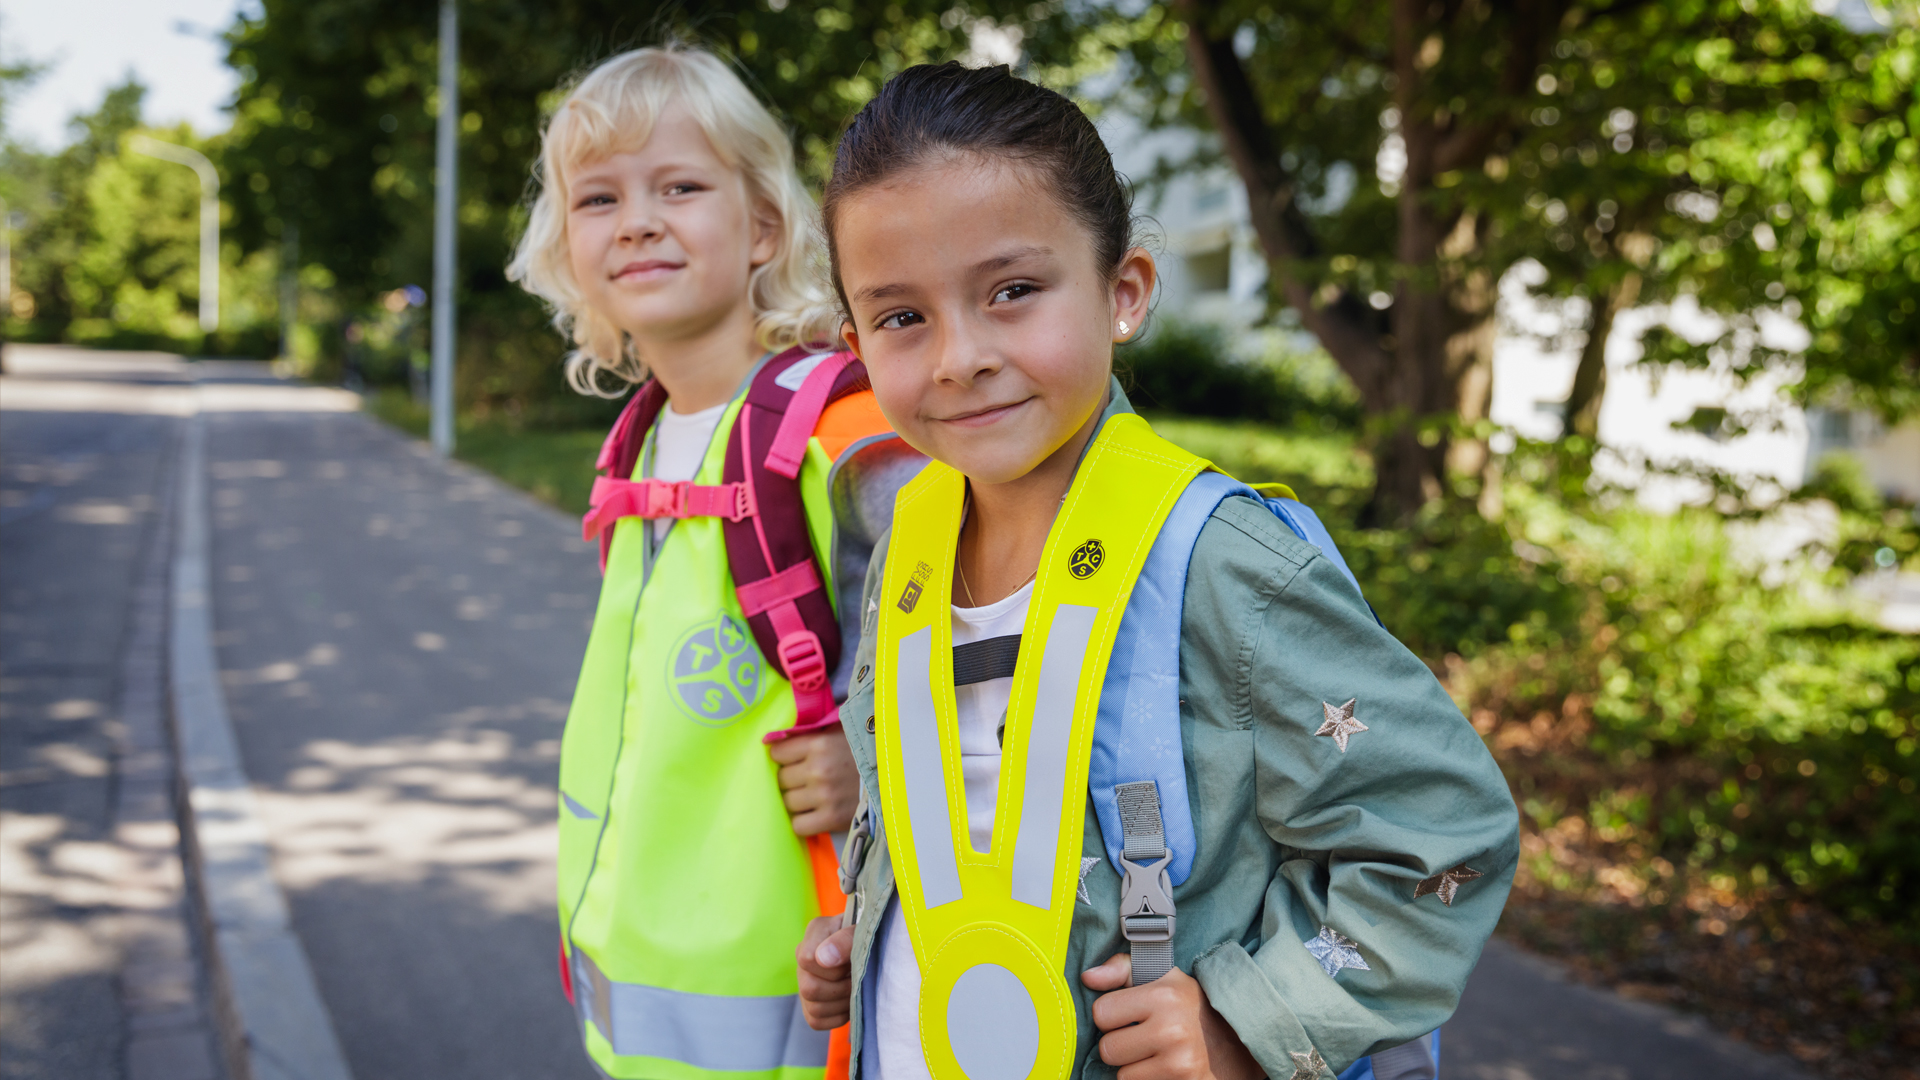 Sécurité sur le chemin de l’école: deux enfants avec gilet réfléchissant et triangle lumineux